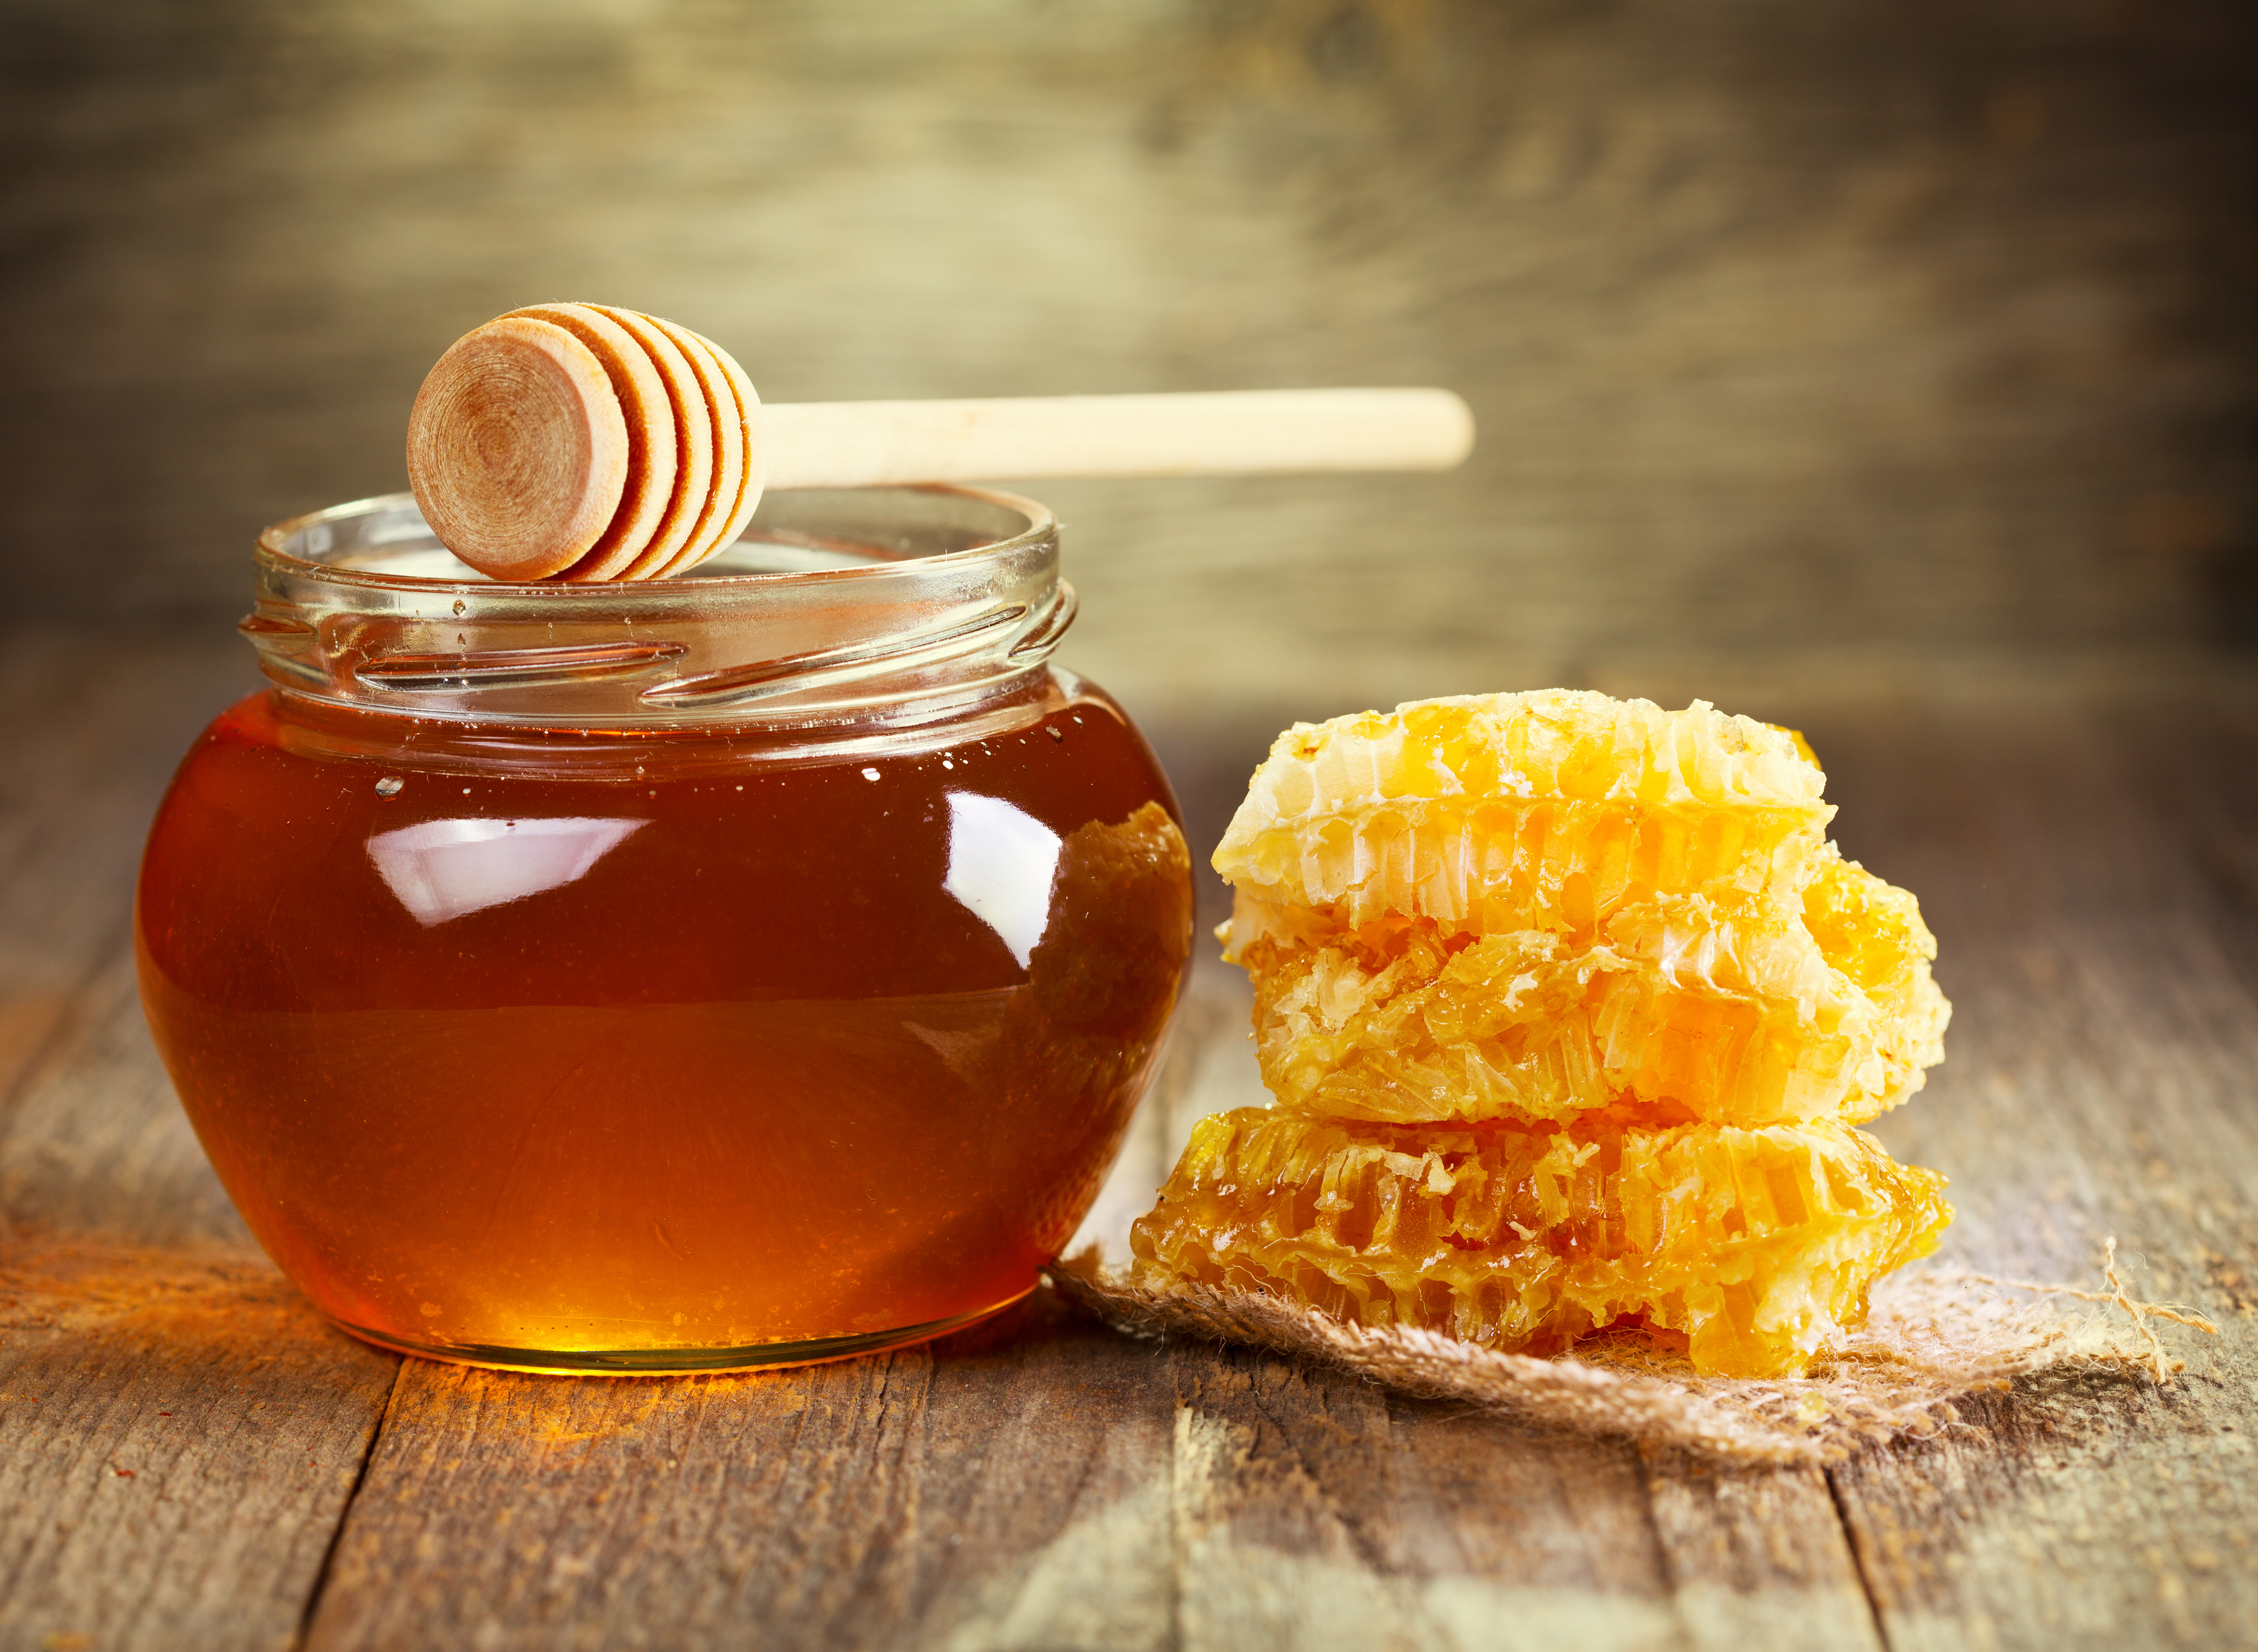 اگر هر روز عسل بخورید چه اتفاقی در بدن شما روی خواهد داد؟